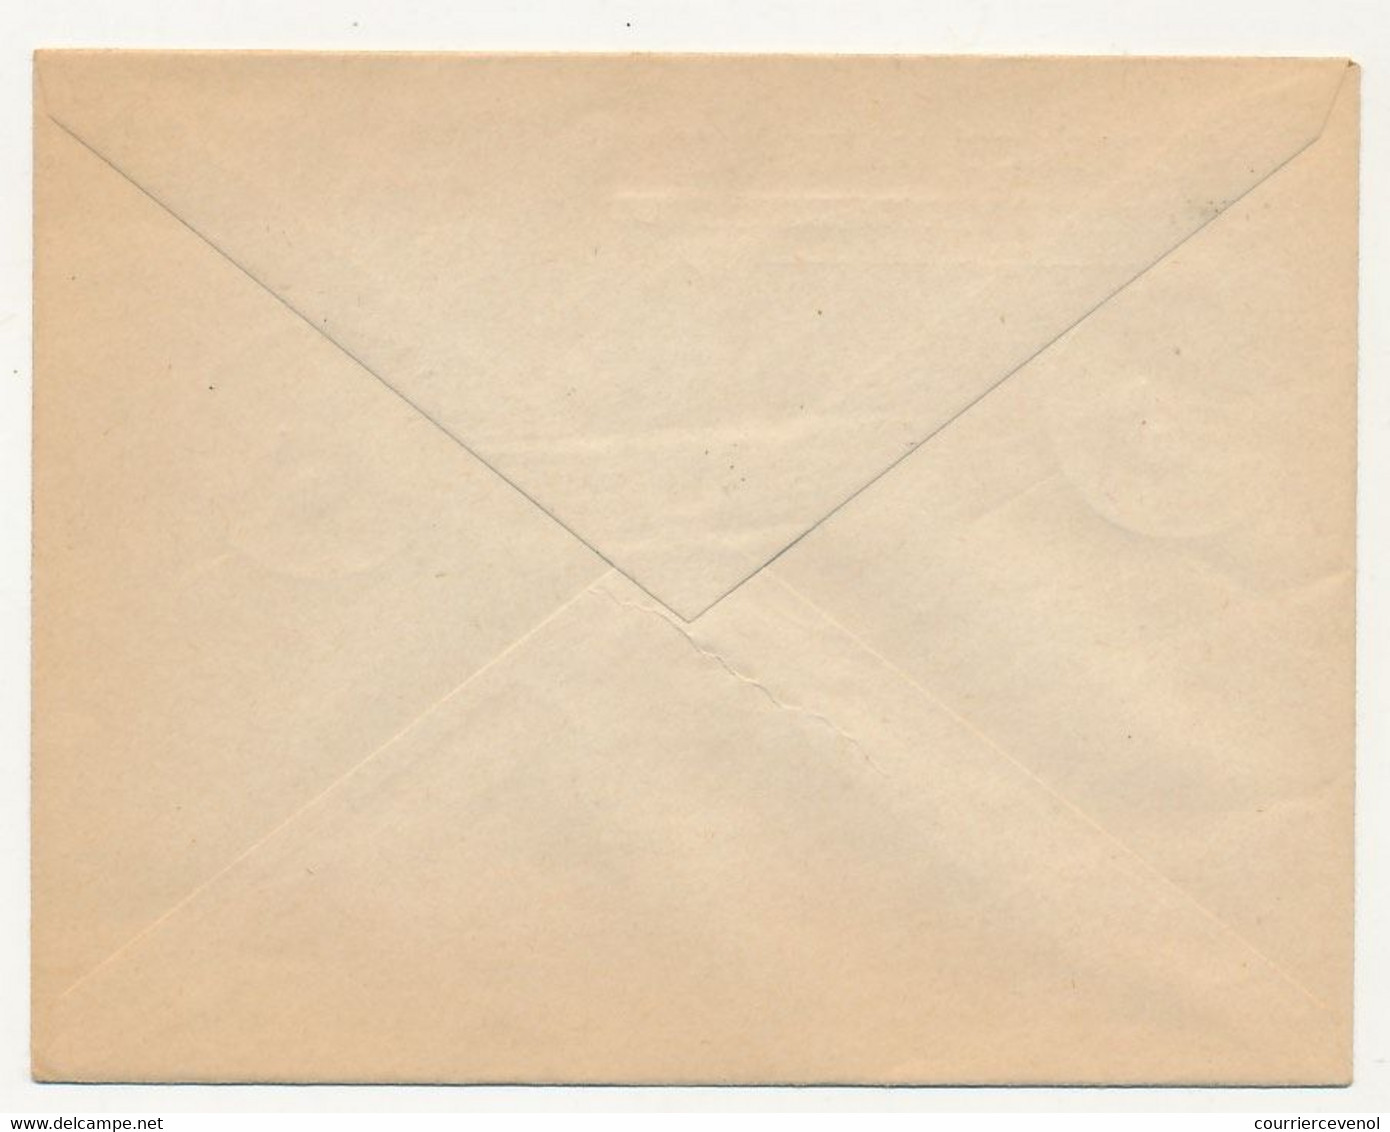 FRANCE - Enveloppe En-tête Non Adressée, Affr Composé, Cachet "Parlement Congrès De Versailles 16/1/1947" - Matasellos Conmemorativos